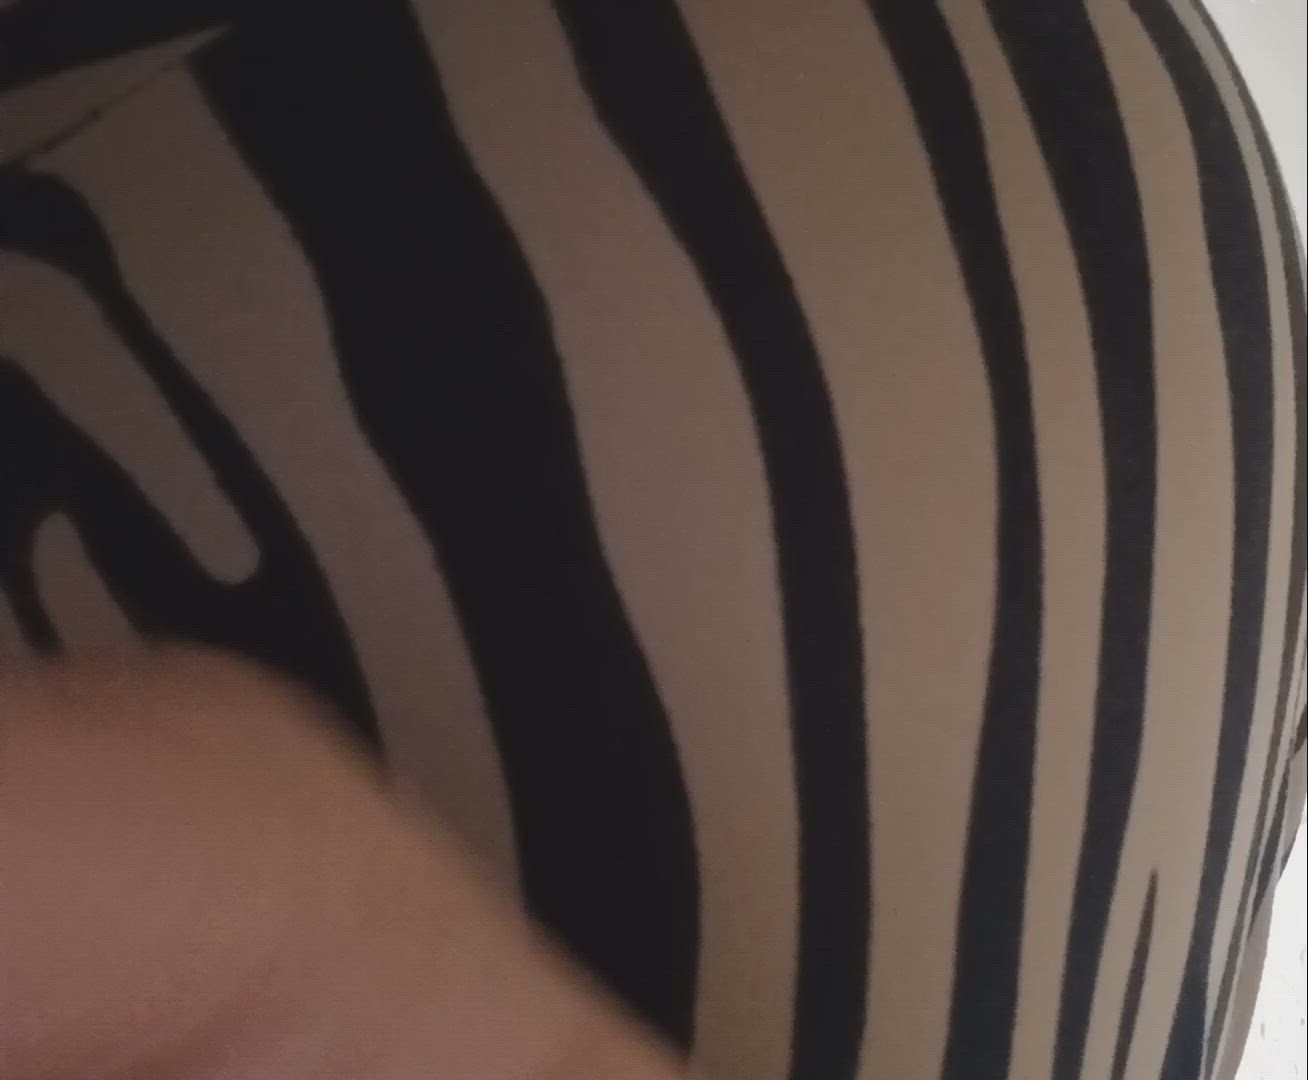 Fart porn video with onlyfans model limlorena <strong>@pandorafetishlover</strong>